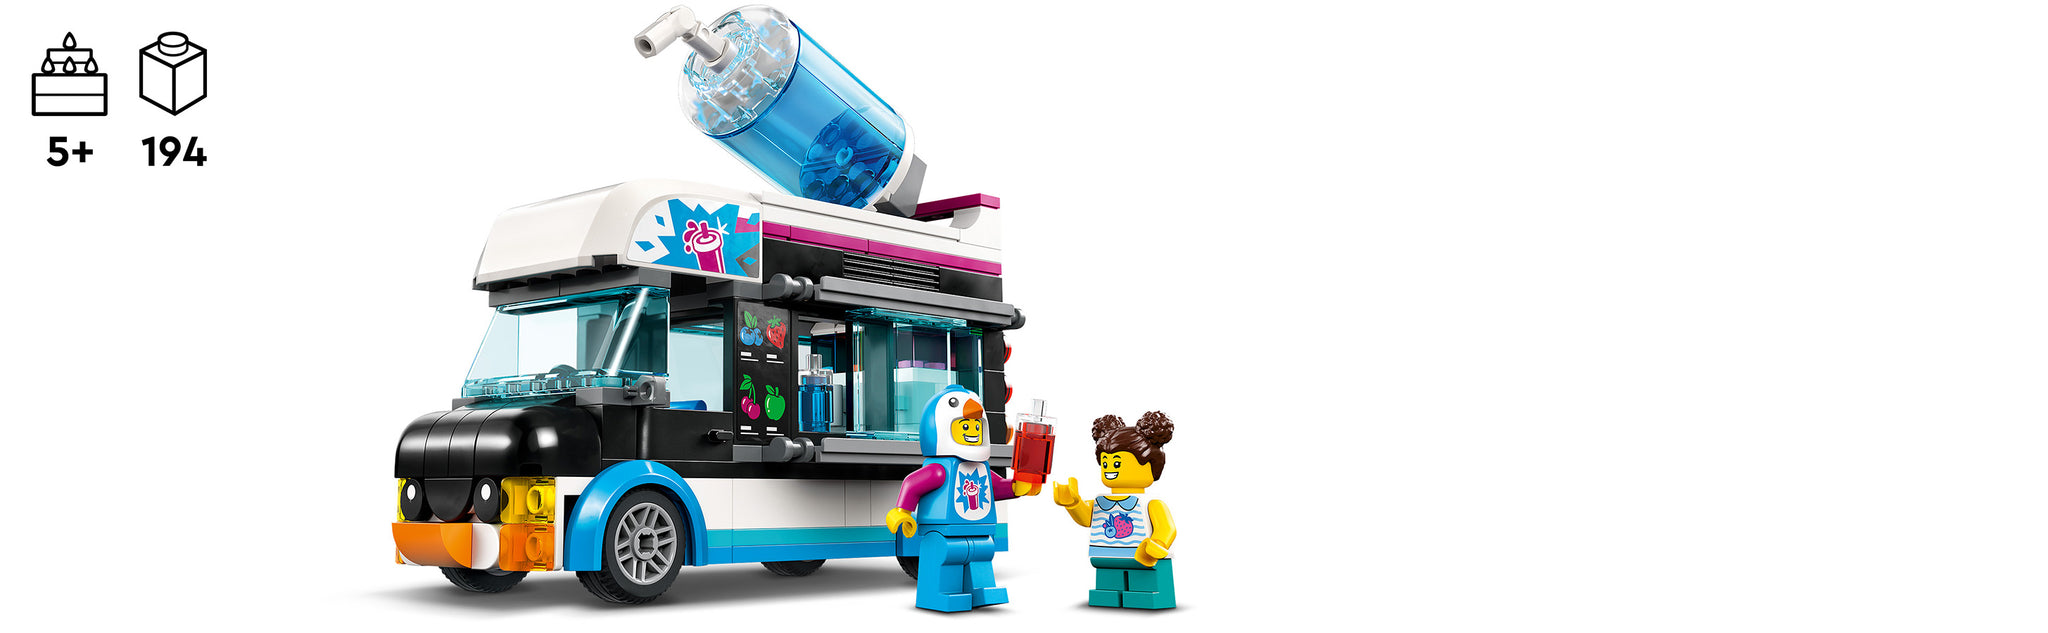 LEGO 60384 Penguin Slushy Truck